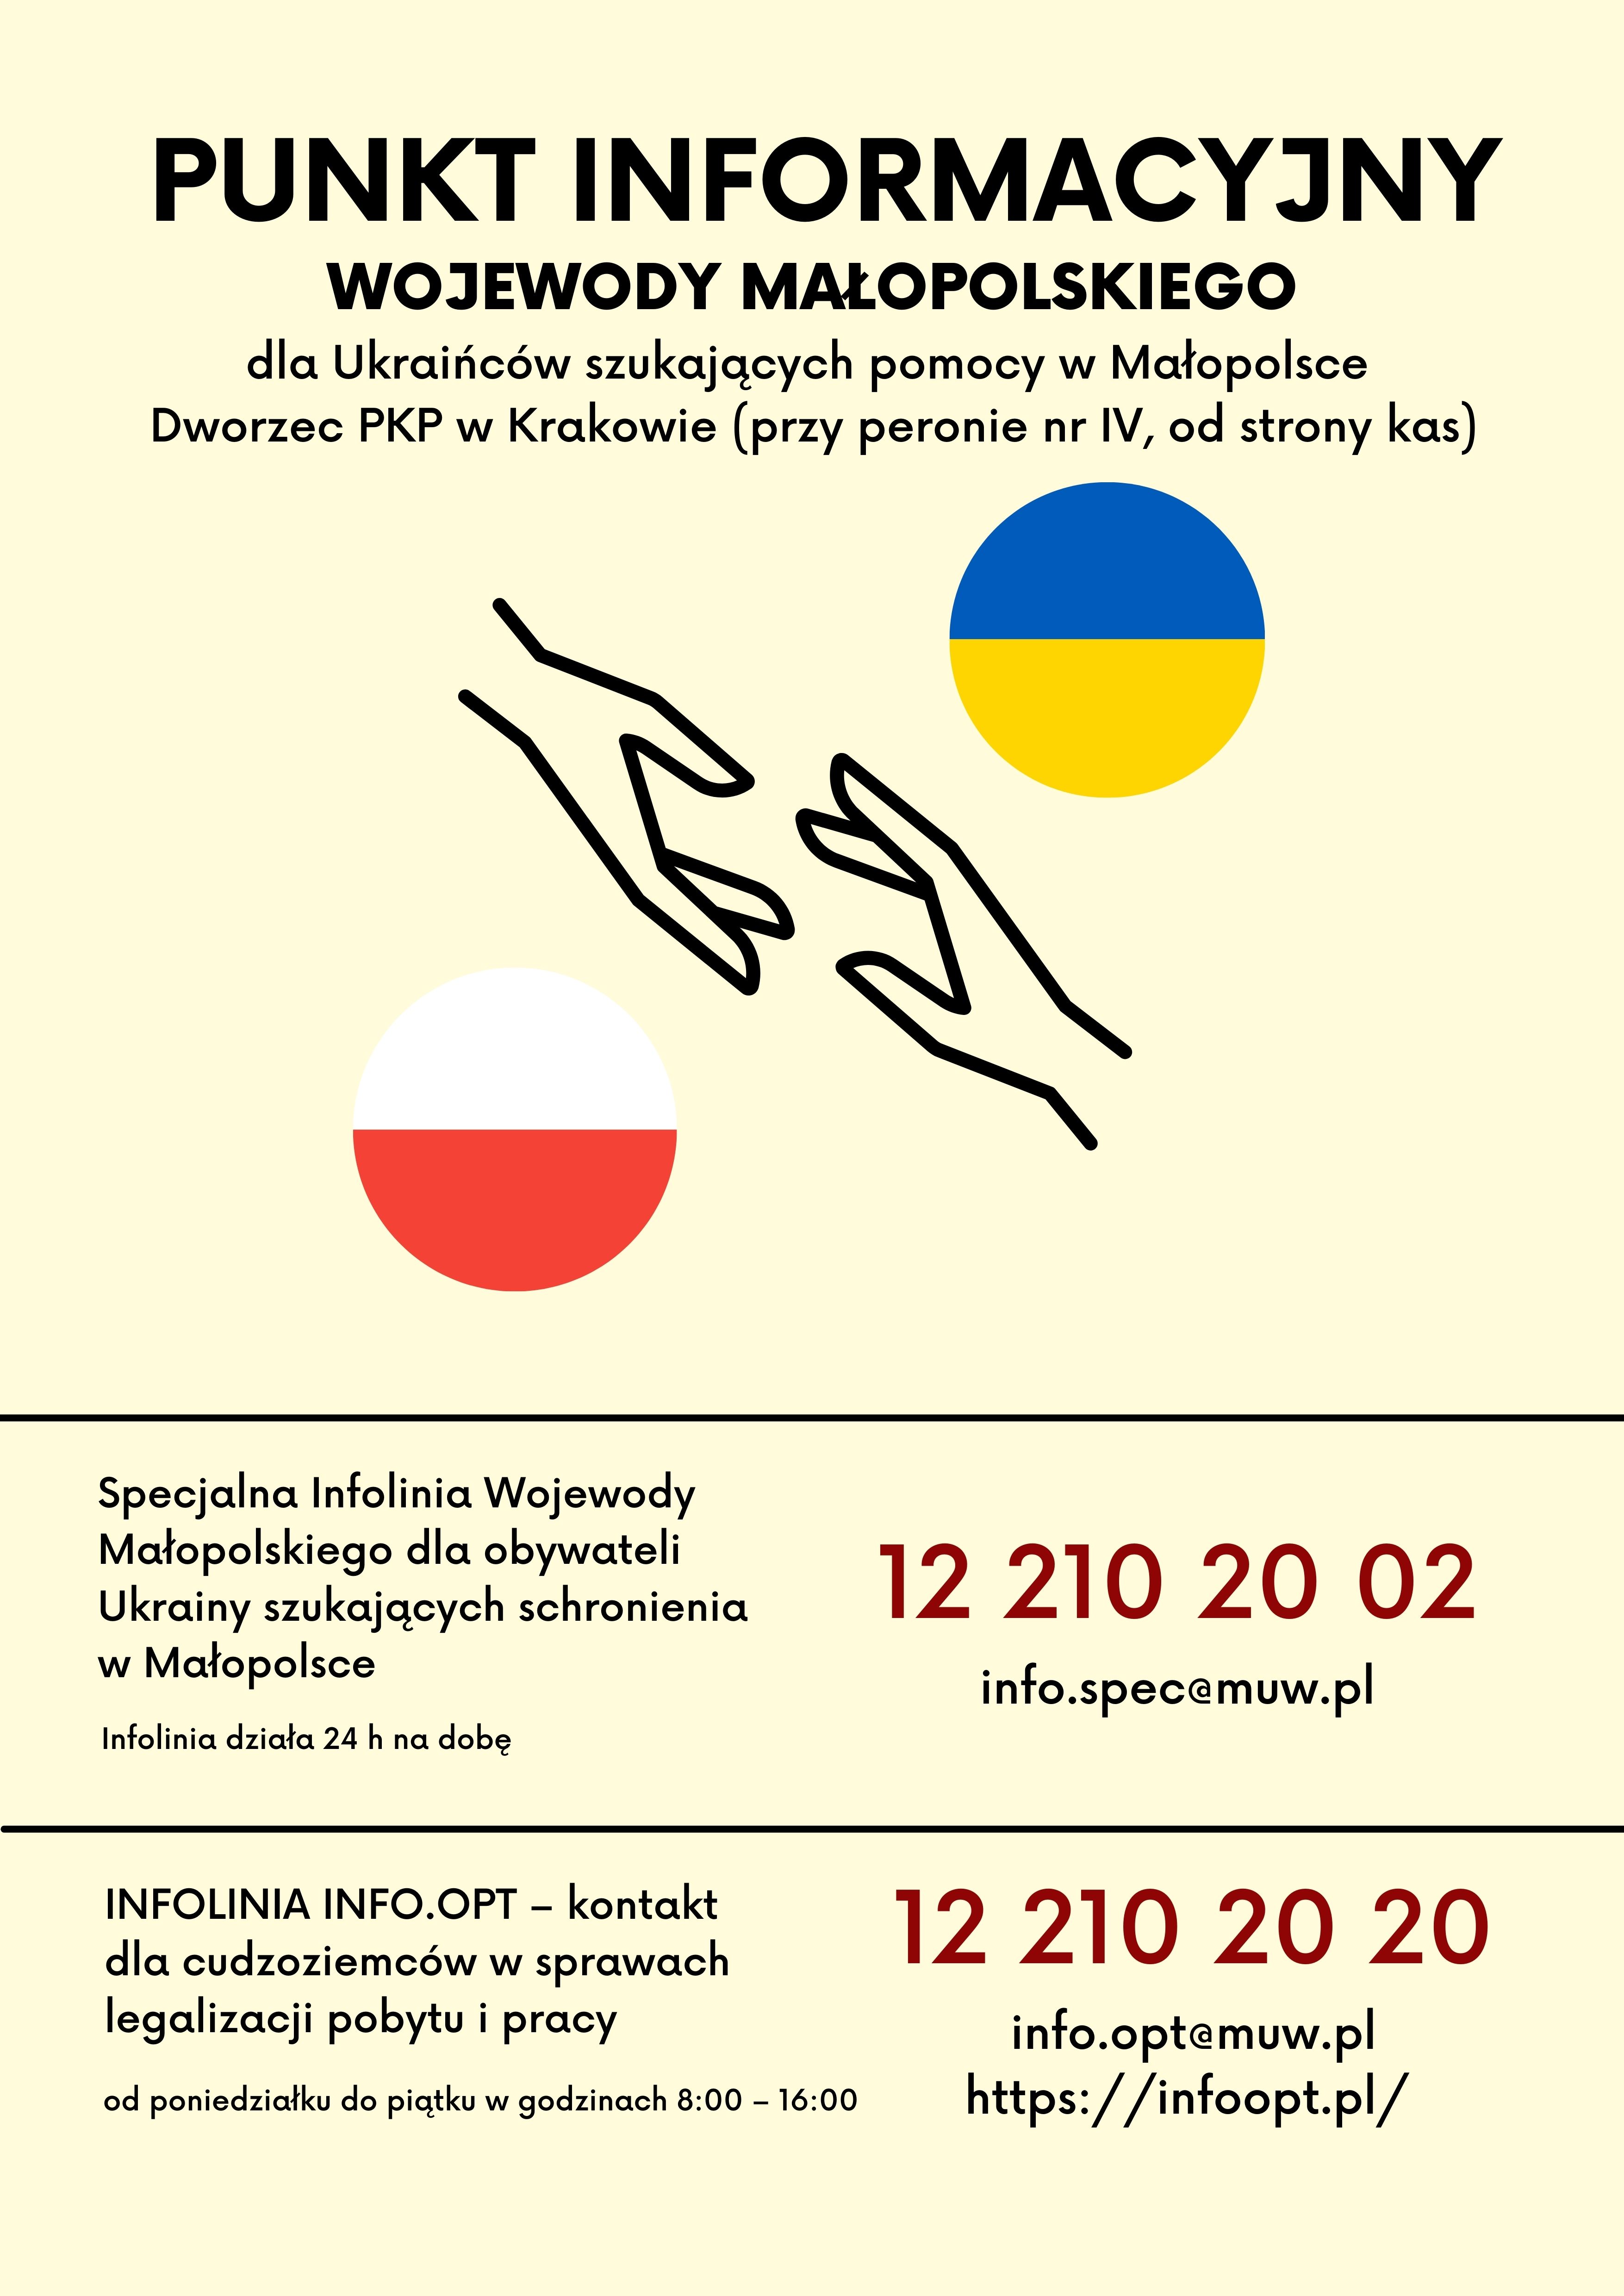 Wojewódzki System Koordynacji Pomocy dla Ukrainy